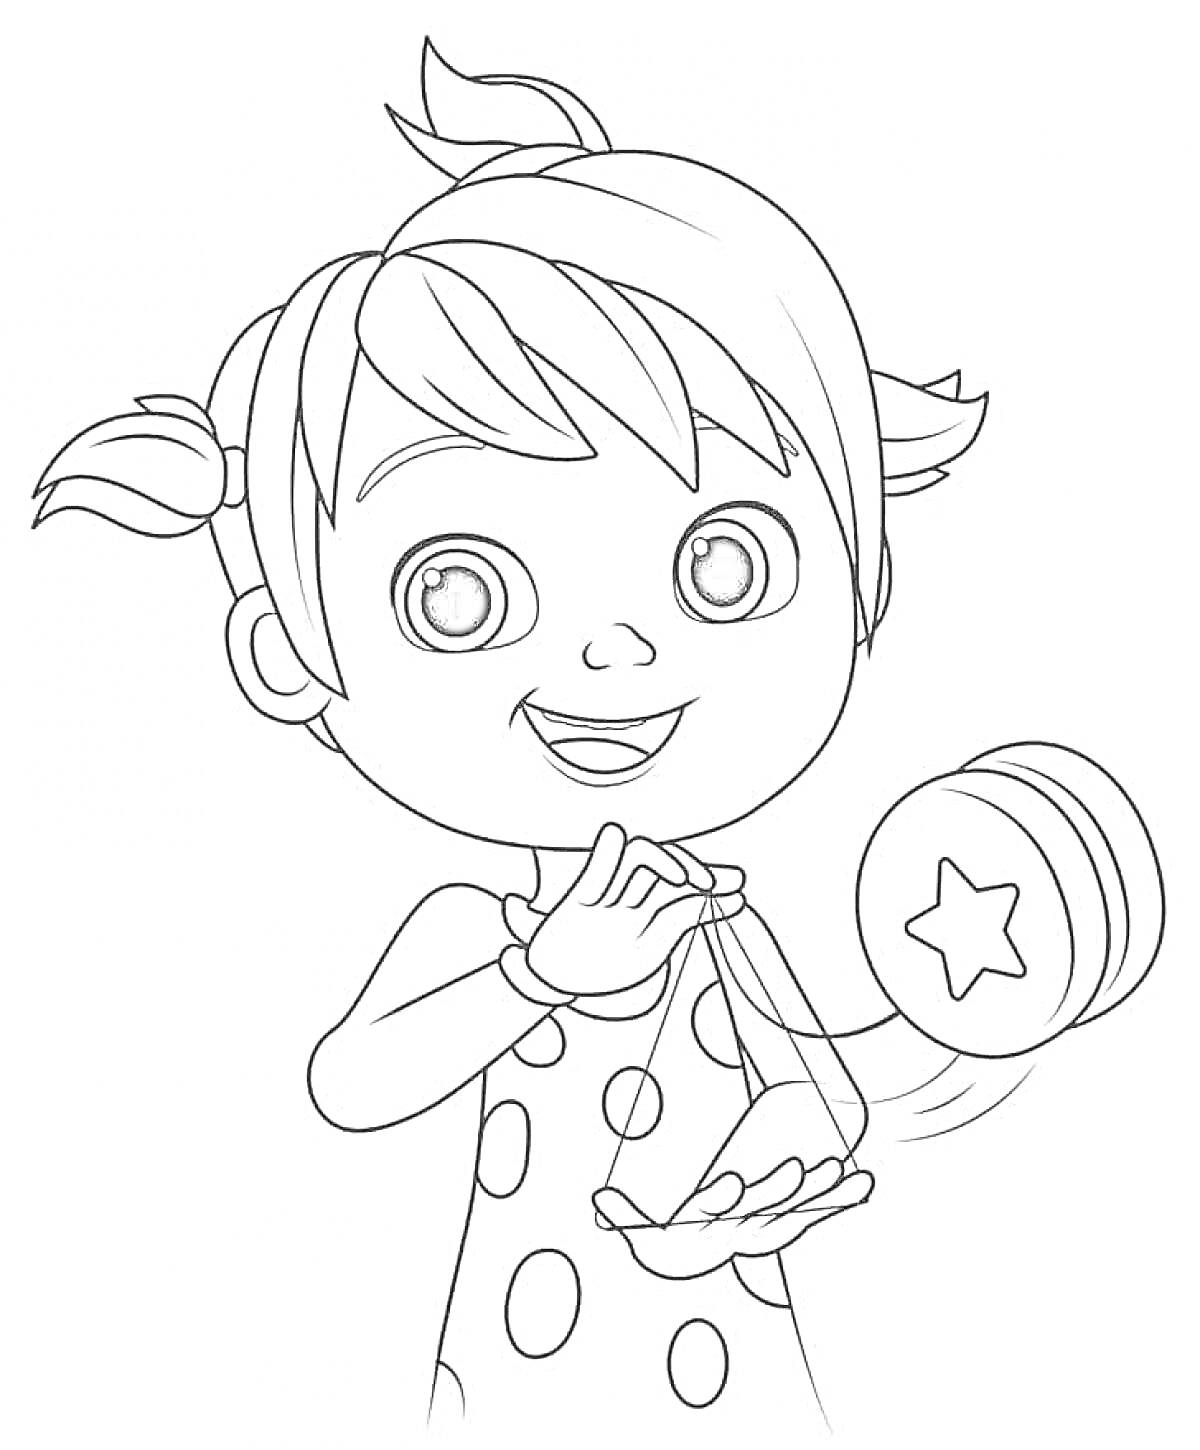 Раскраска Девочка с йо-йо в платье с кругами и двумя хвостиками